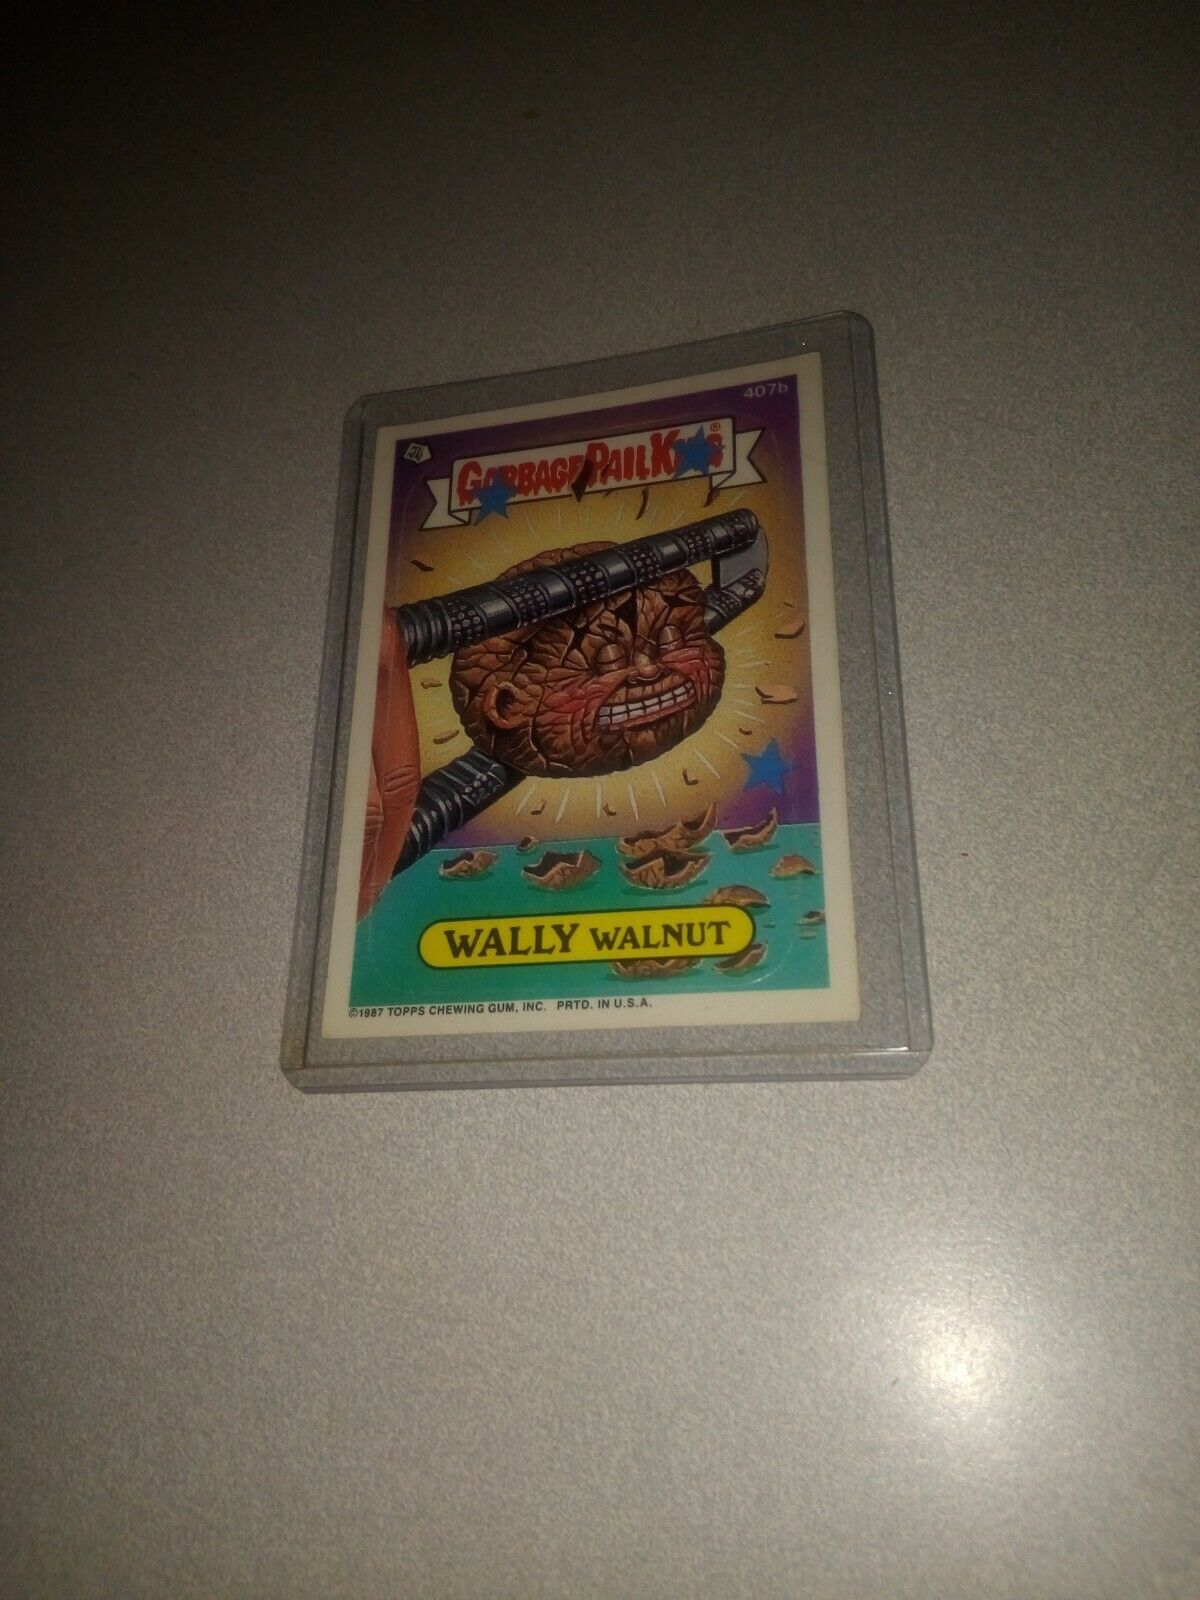 VINTAGE 1987 Topps Garbage Pail Kids Trading Card #407b-Wally Walnut